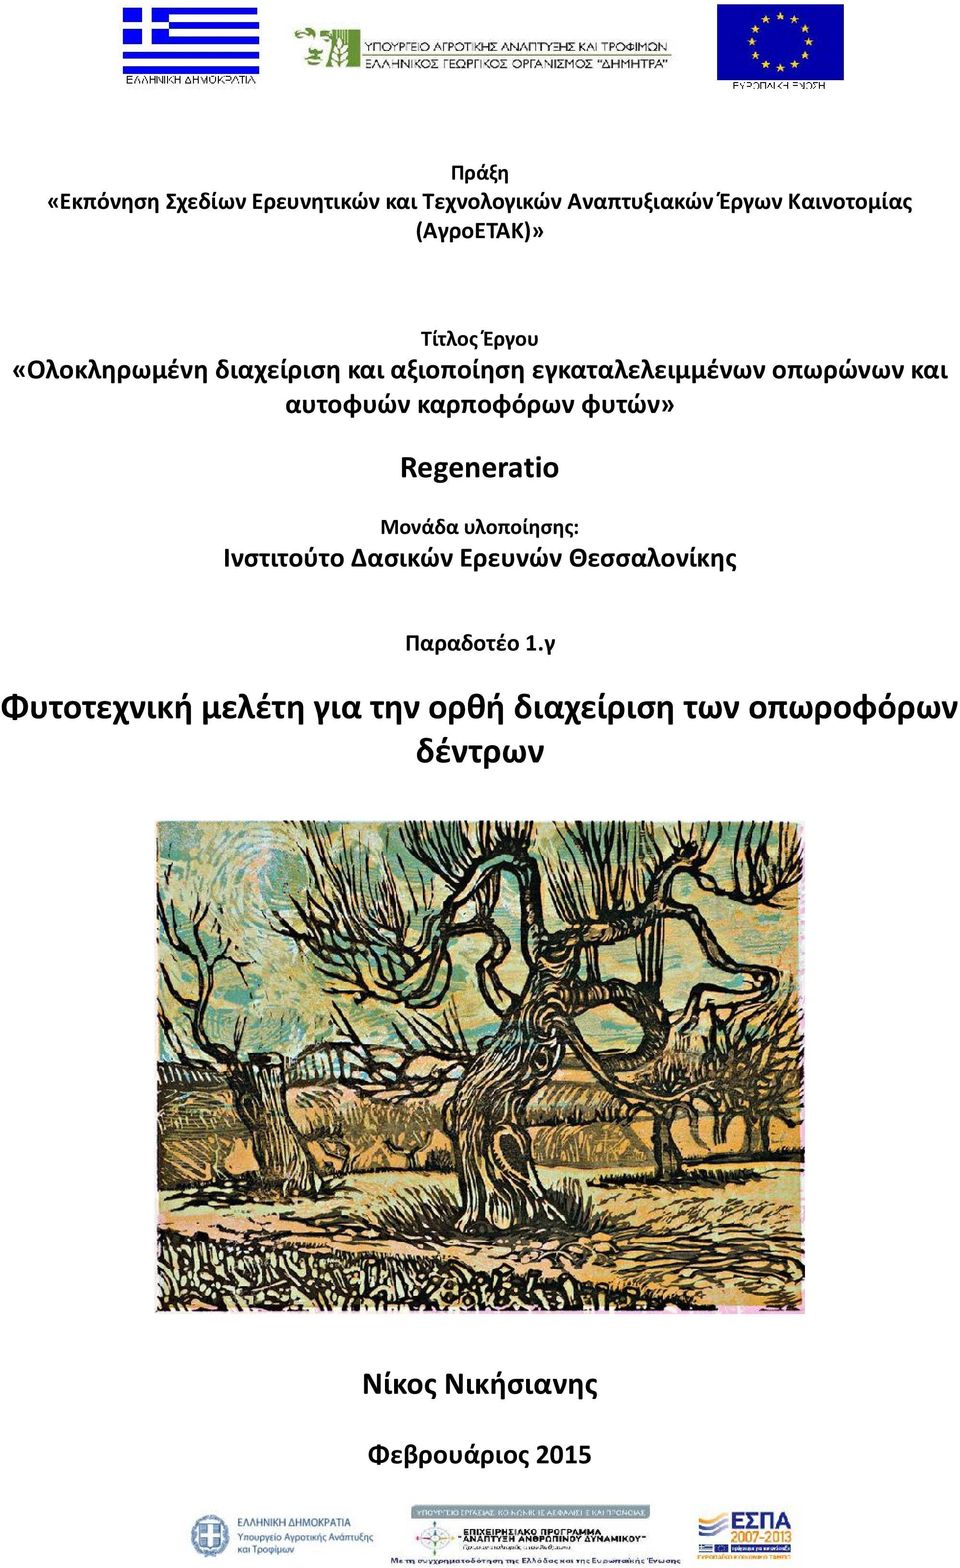 καρποφόρων φυτών» Regeneratio Μονάδα υλοποίησης: Ινστιτούτο Δασικών Ερευνών Θεσσαλονίκης